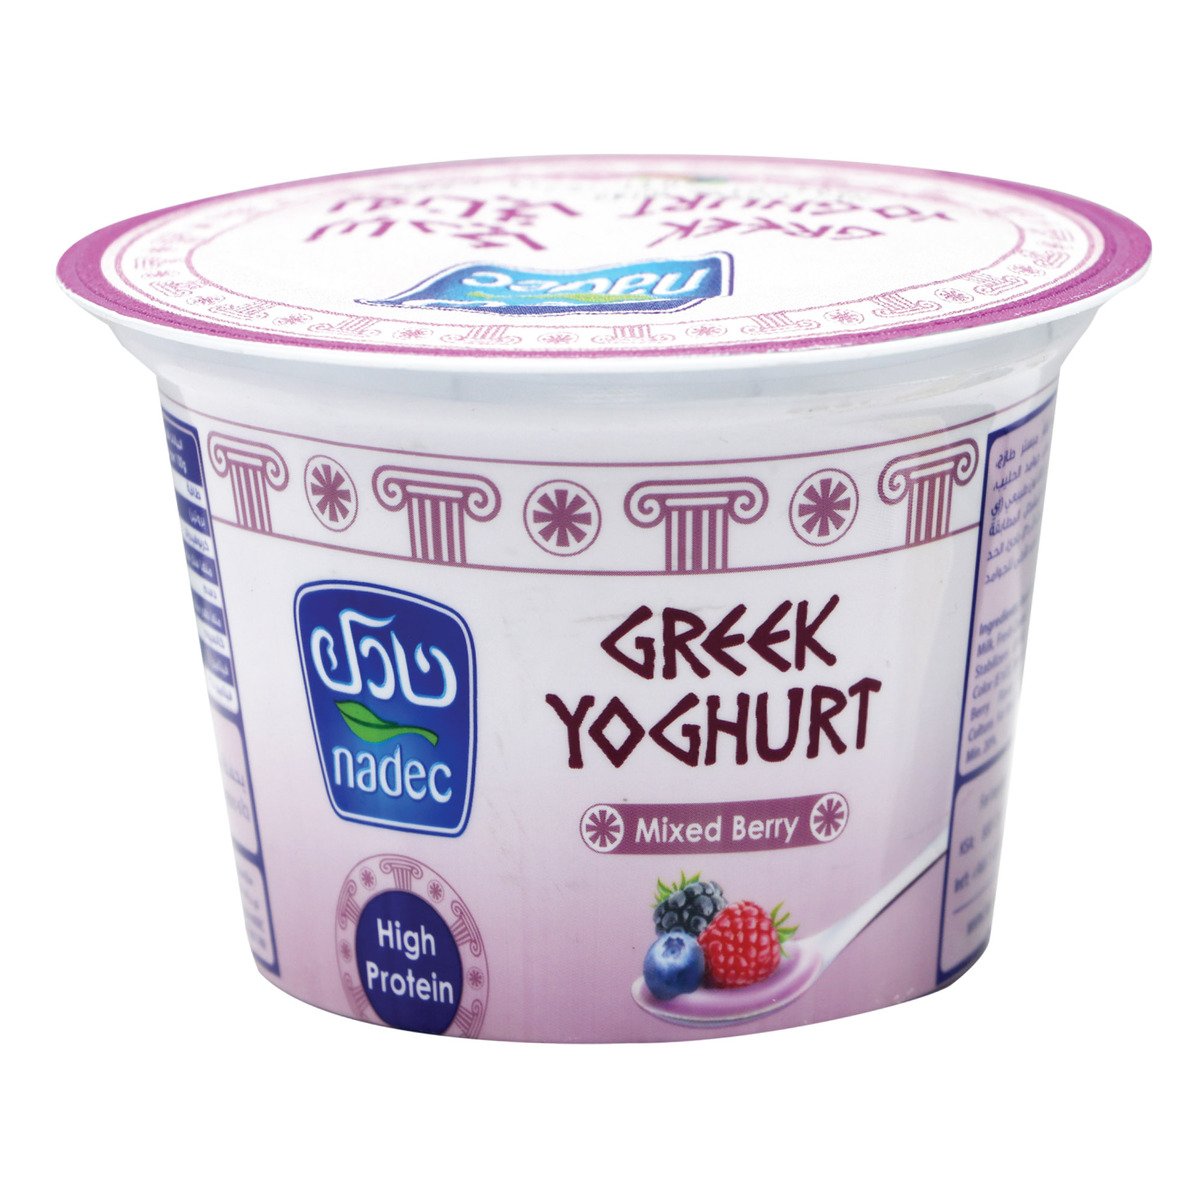 اشتري قم بشراء نادك زبادي يوناني بالتوت المشكل 160 جم Online at Best Price من الموقع - من لولو هايبر ماركت Flavoured Yoghurt في السعودية